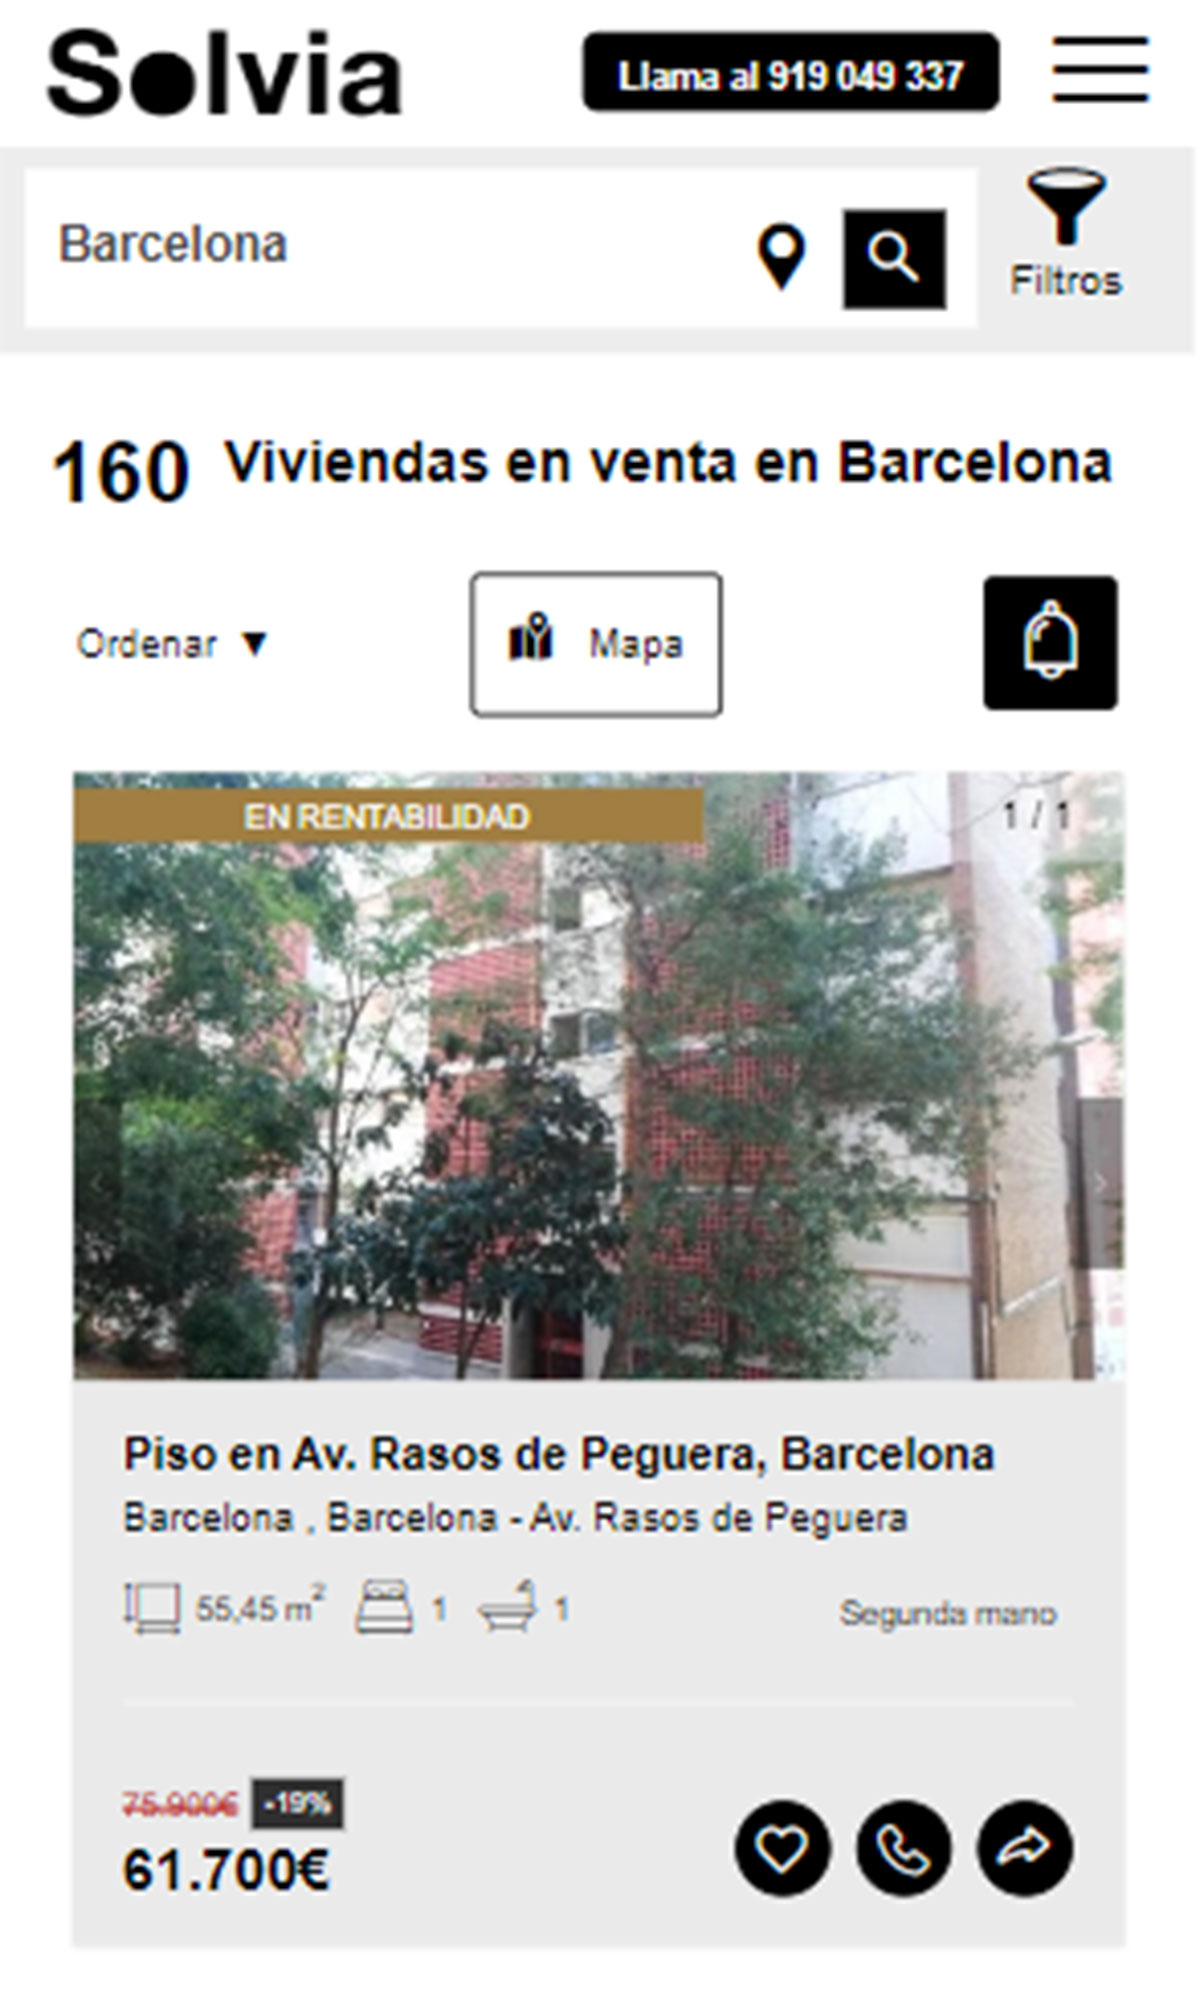 Piso en la ciudad de Barcelona por 61.700 euros